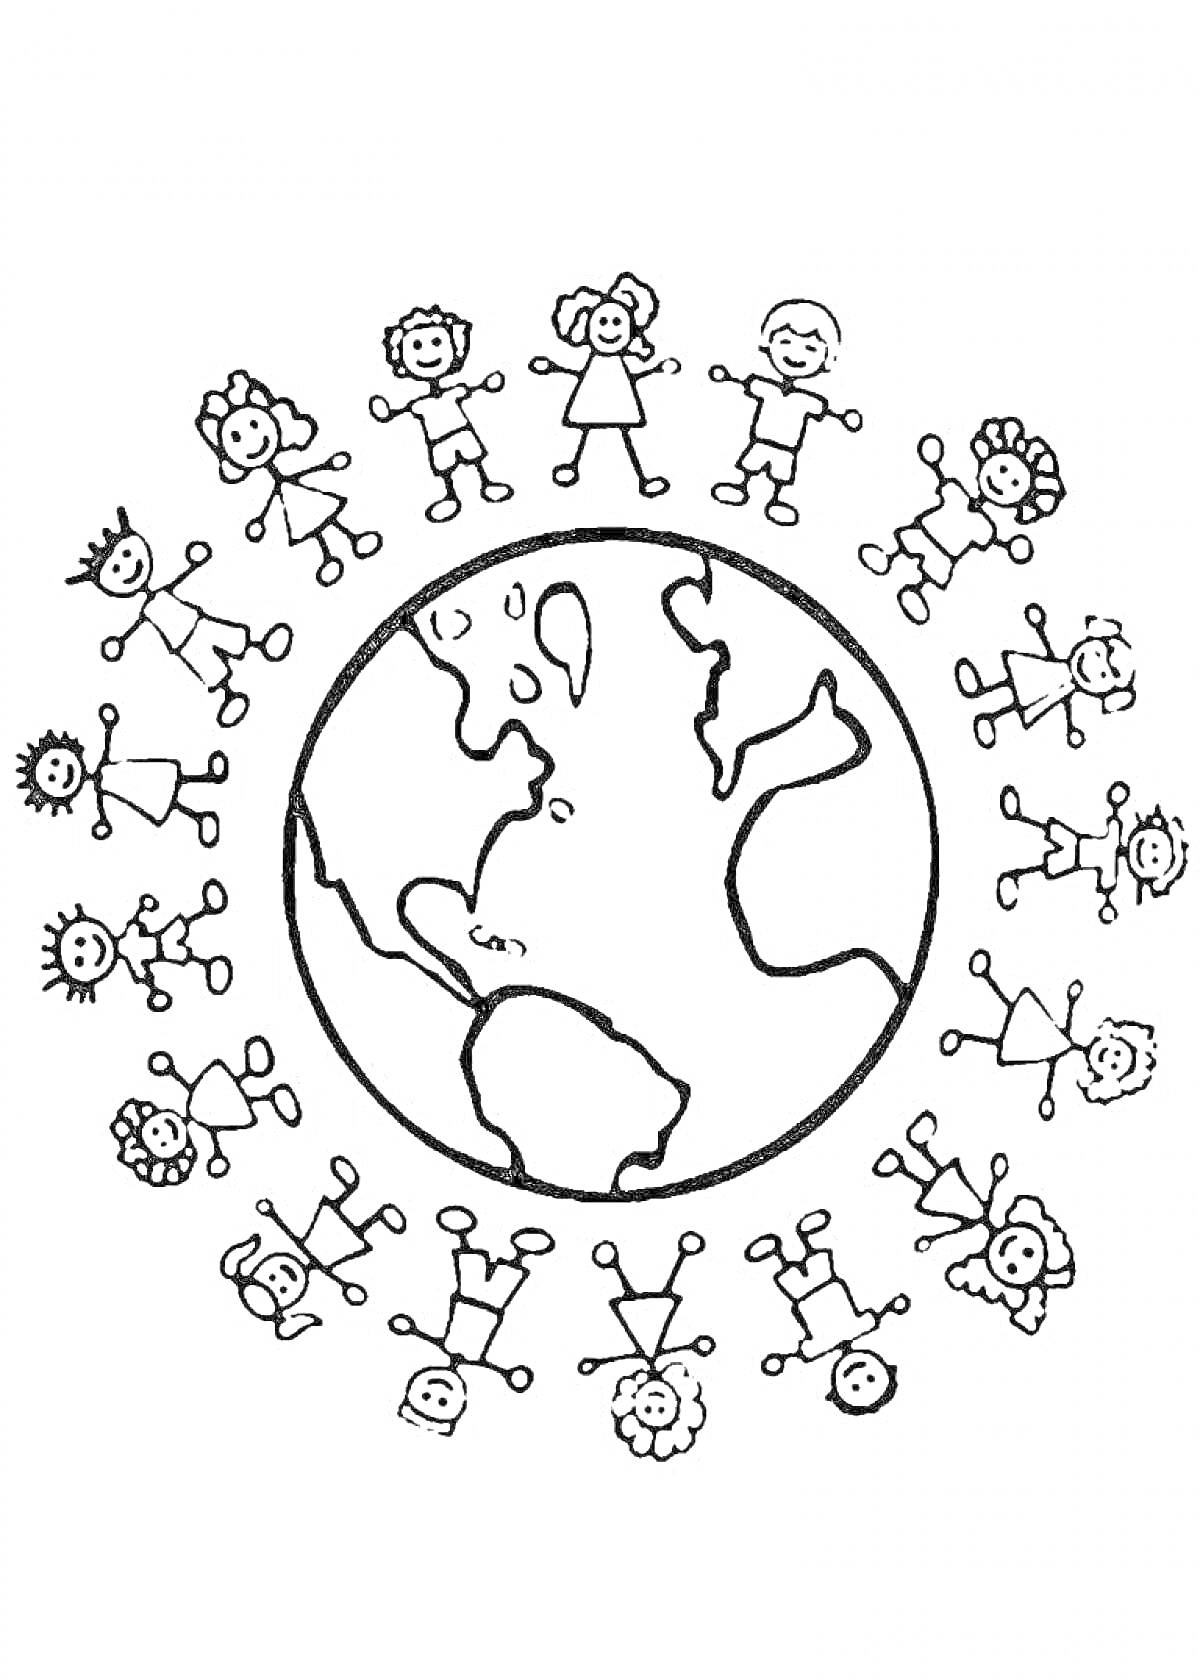 Земной шар с детьми, взявшимися за руки вокруг него